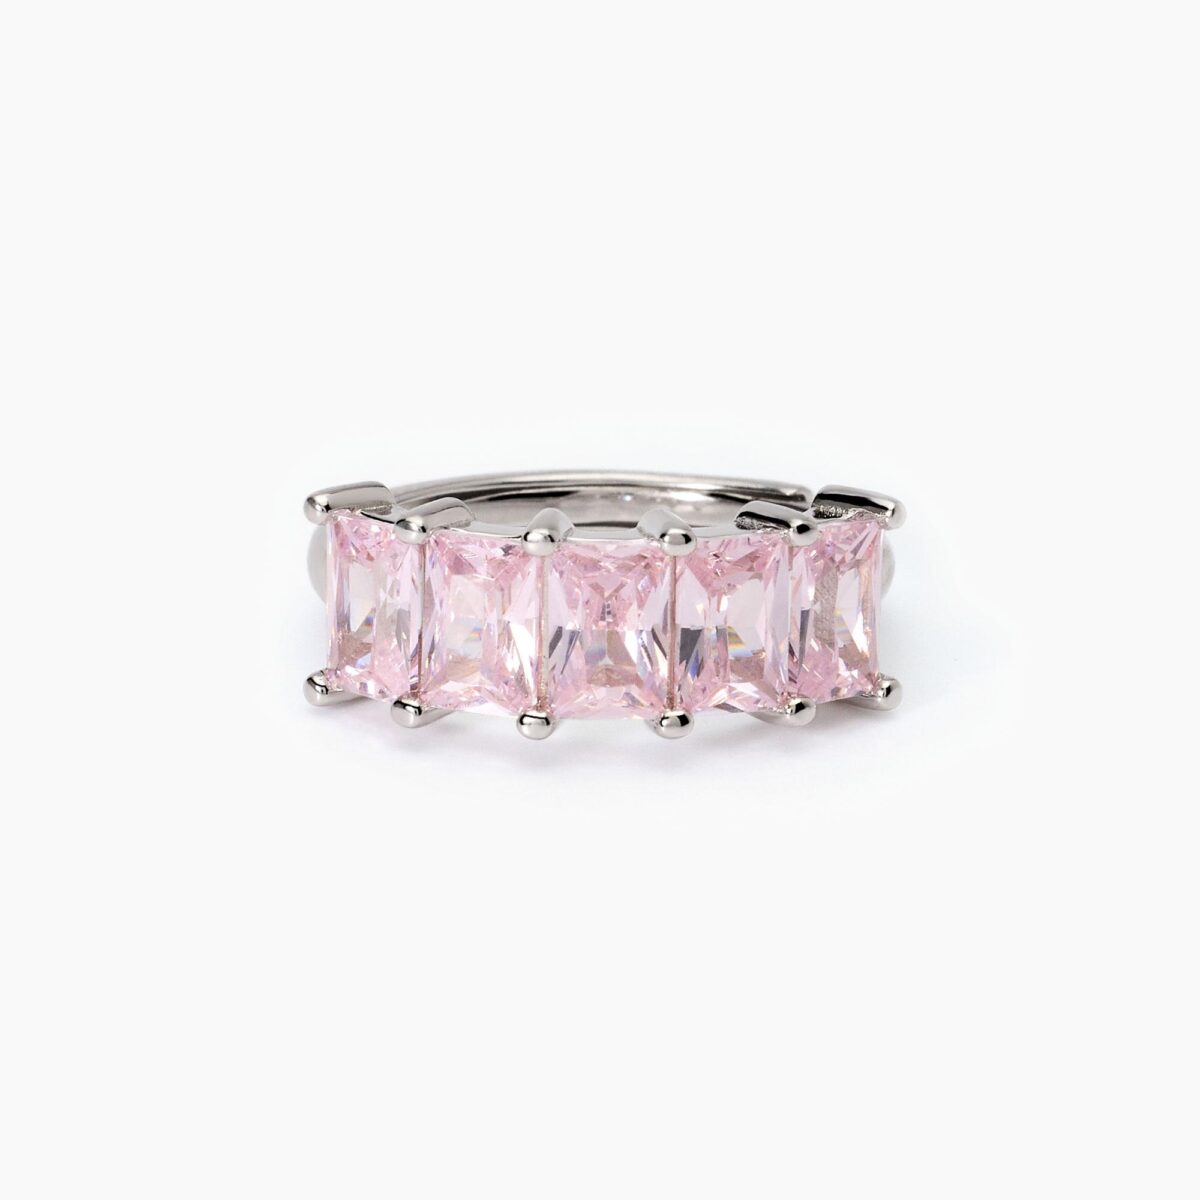 Anello veretta con zirconi rosa taglio baguette donna idea regalo 523410 1